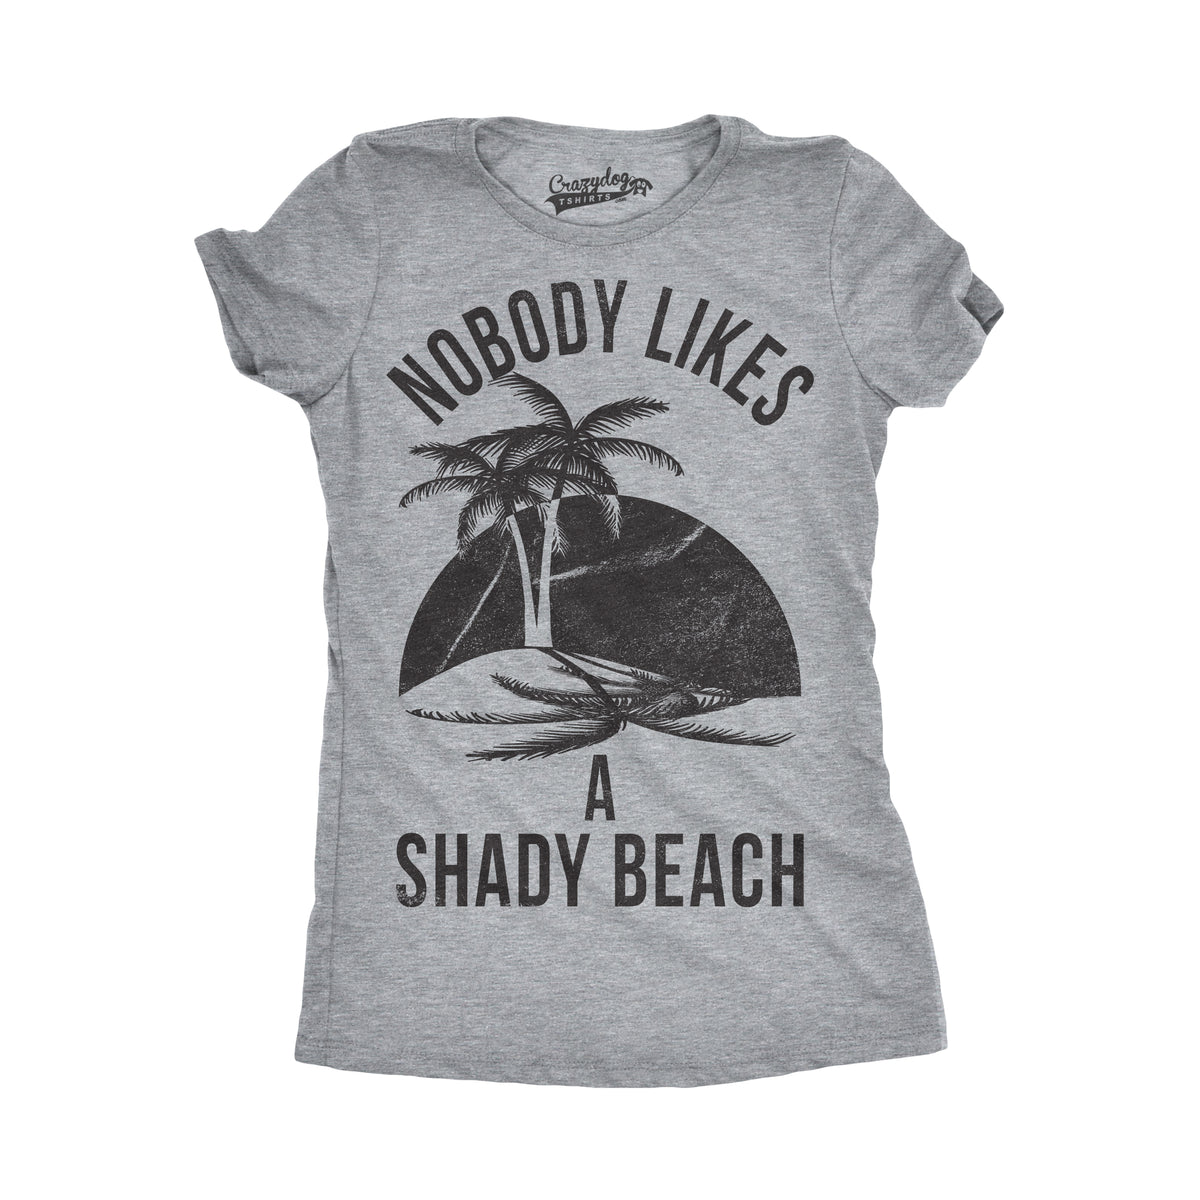 Funny Light Heather Grey - Shady Beach Womens T Shirt Nerdy Vacation Retro Tee